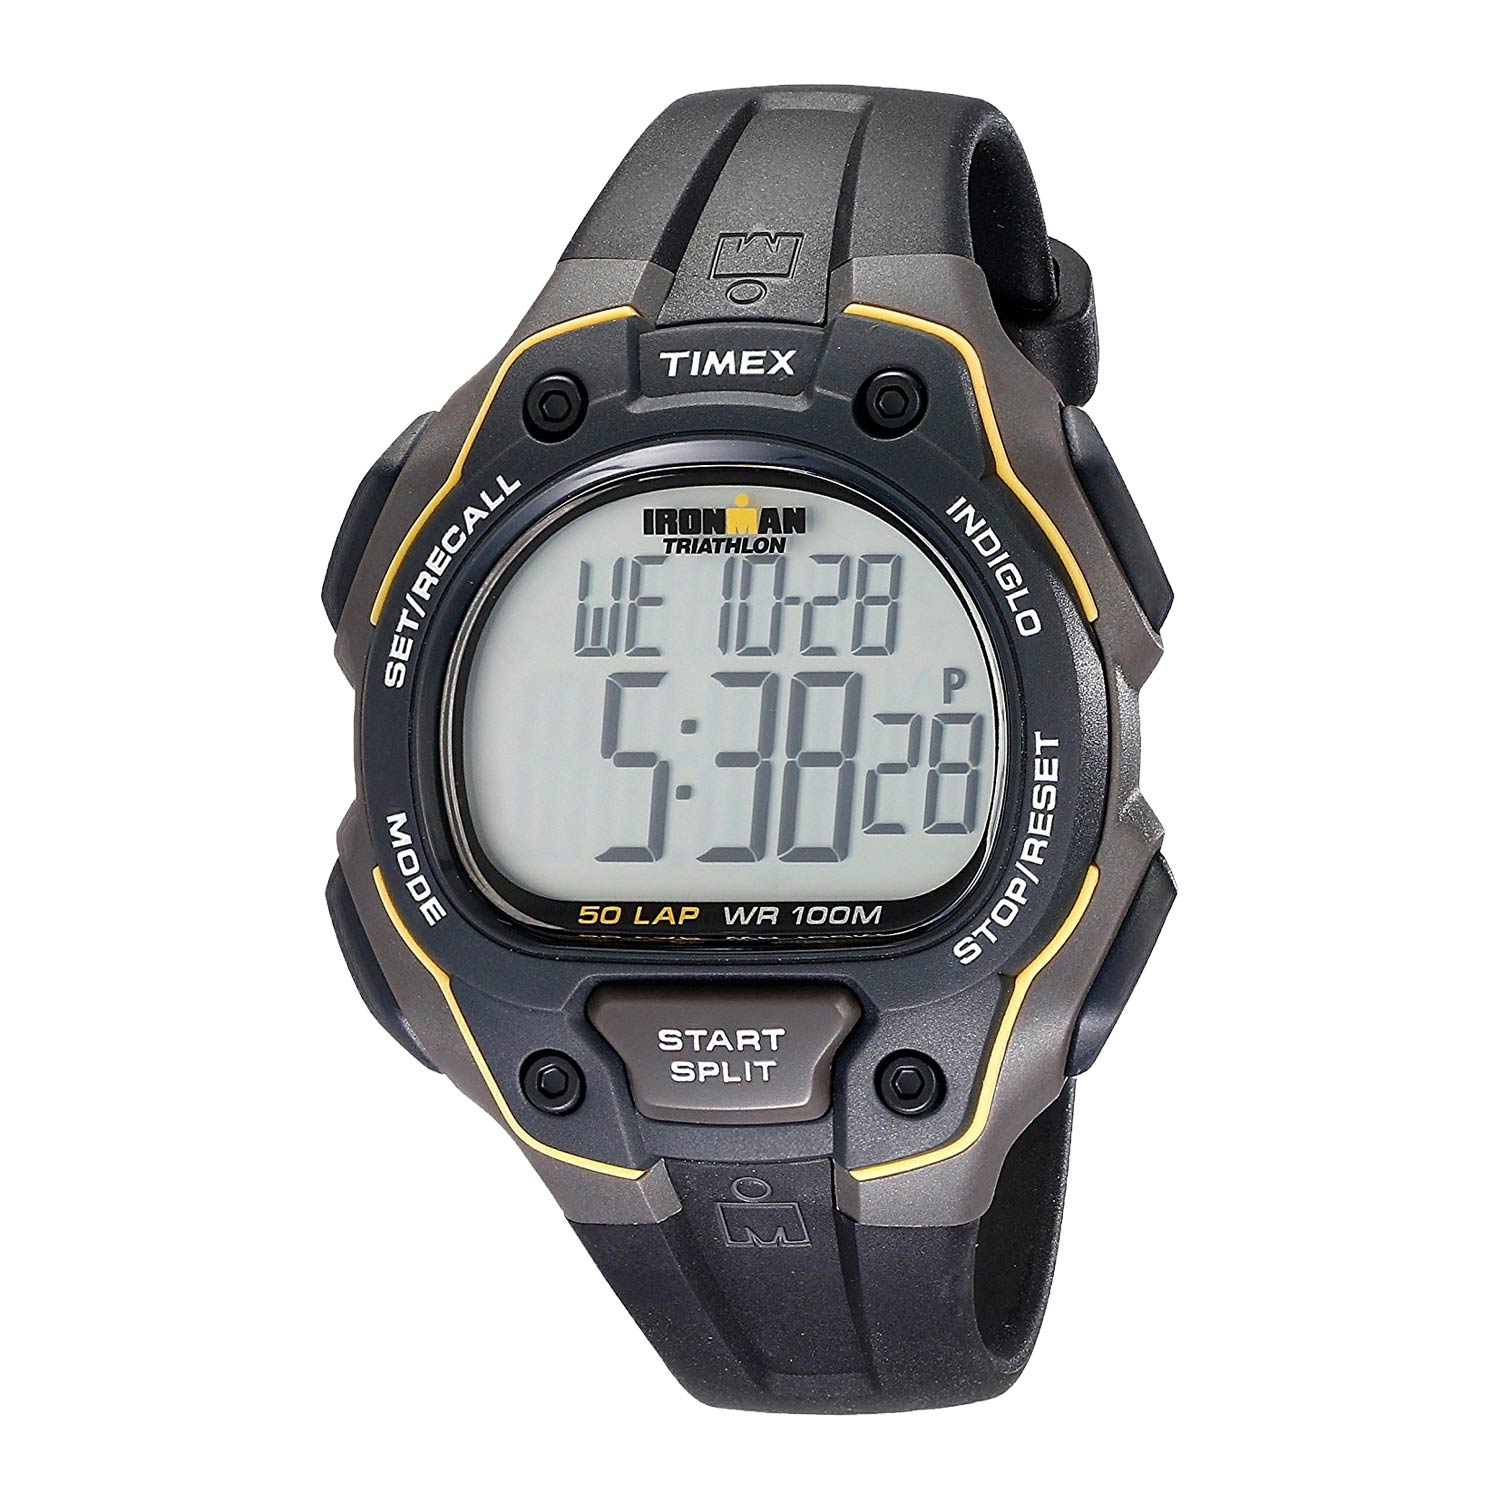 Timex-Ironman-T5K494-Sport-Digitaluhr-in-Schwarz-mit-Kautschukband-und-Quarzuhrwerk